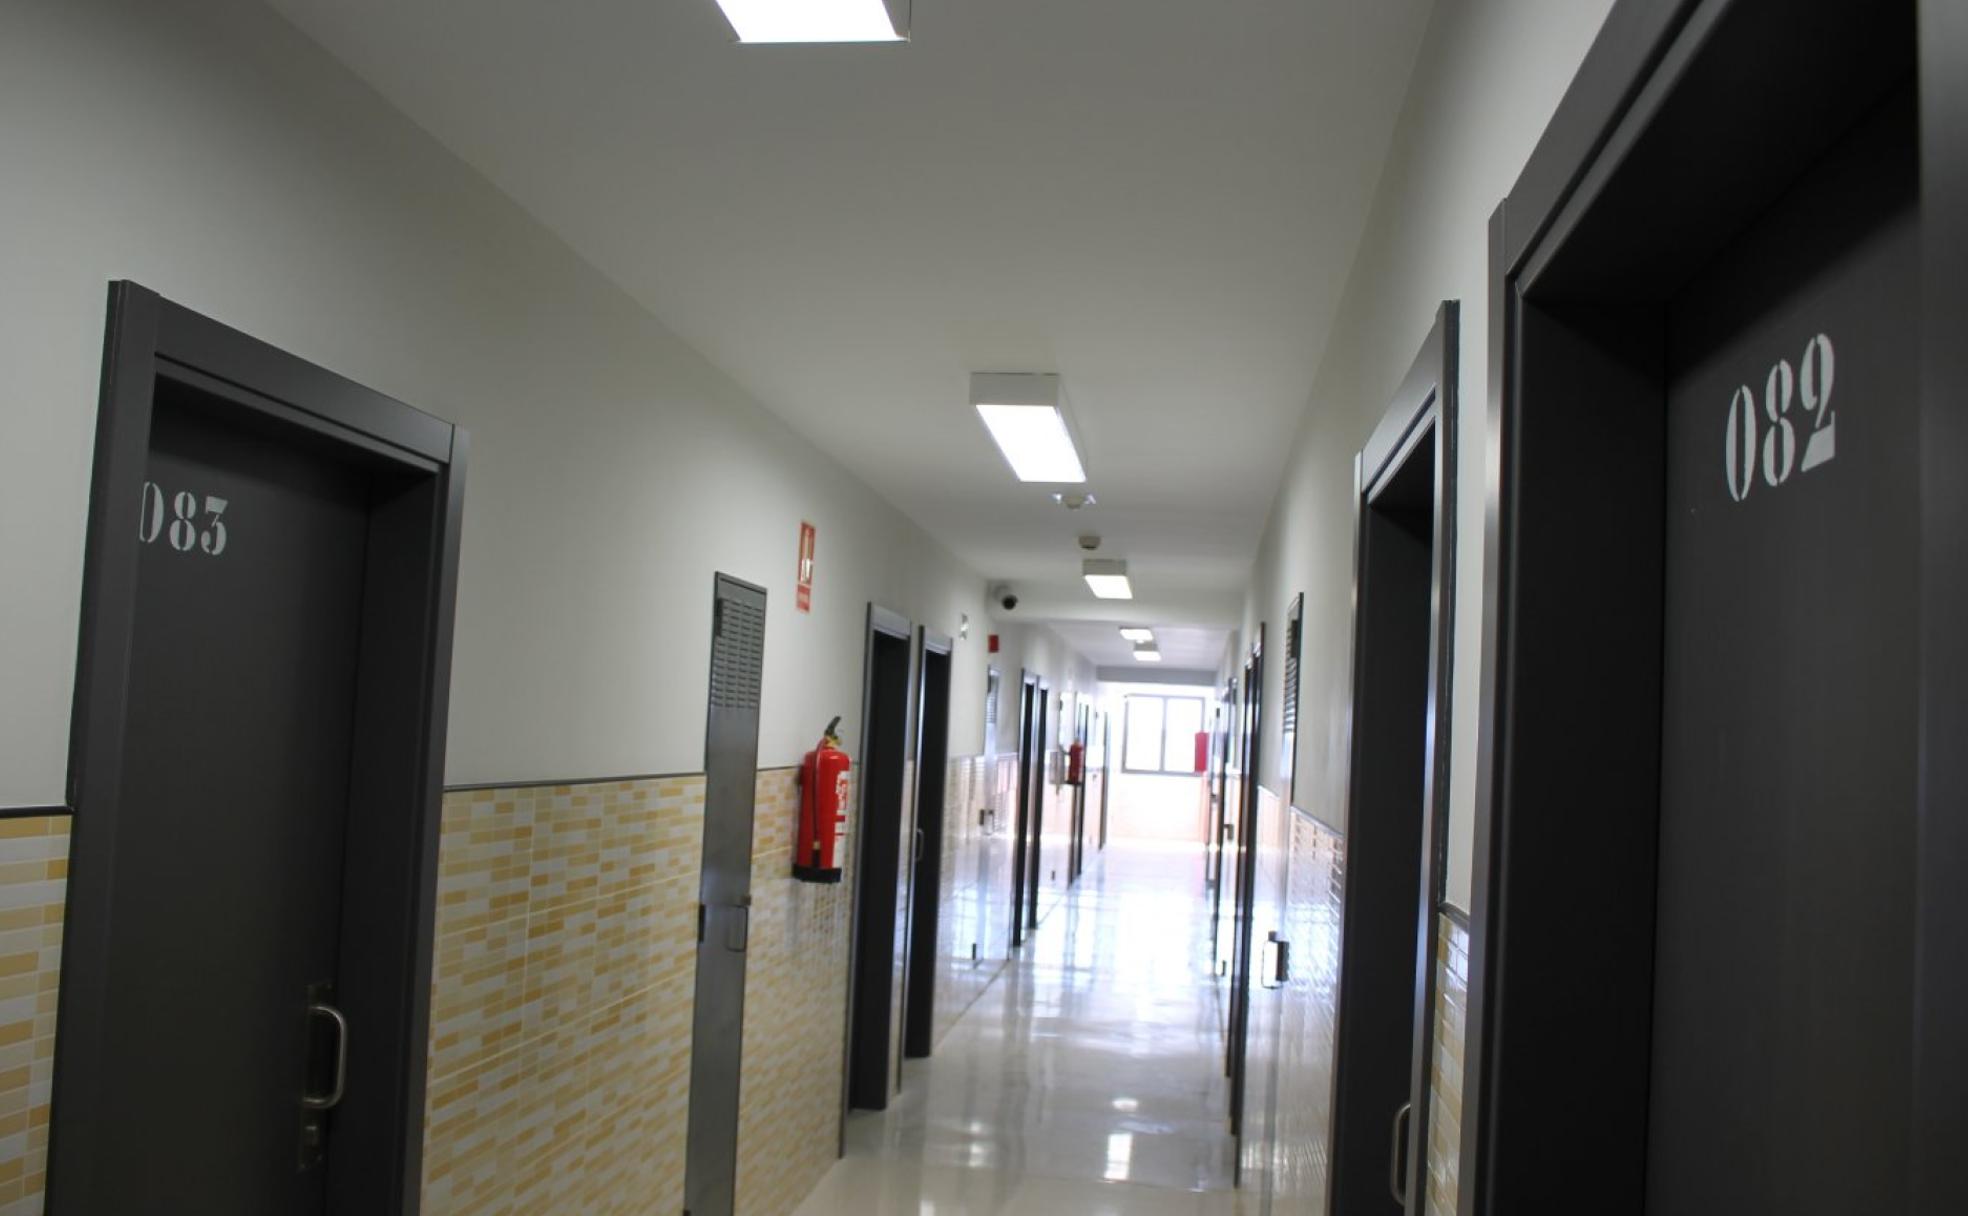 Puertas de las celdas en las que duermen y pasan parte del día los internos en el centro.